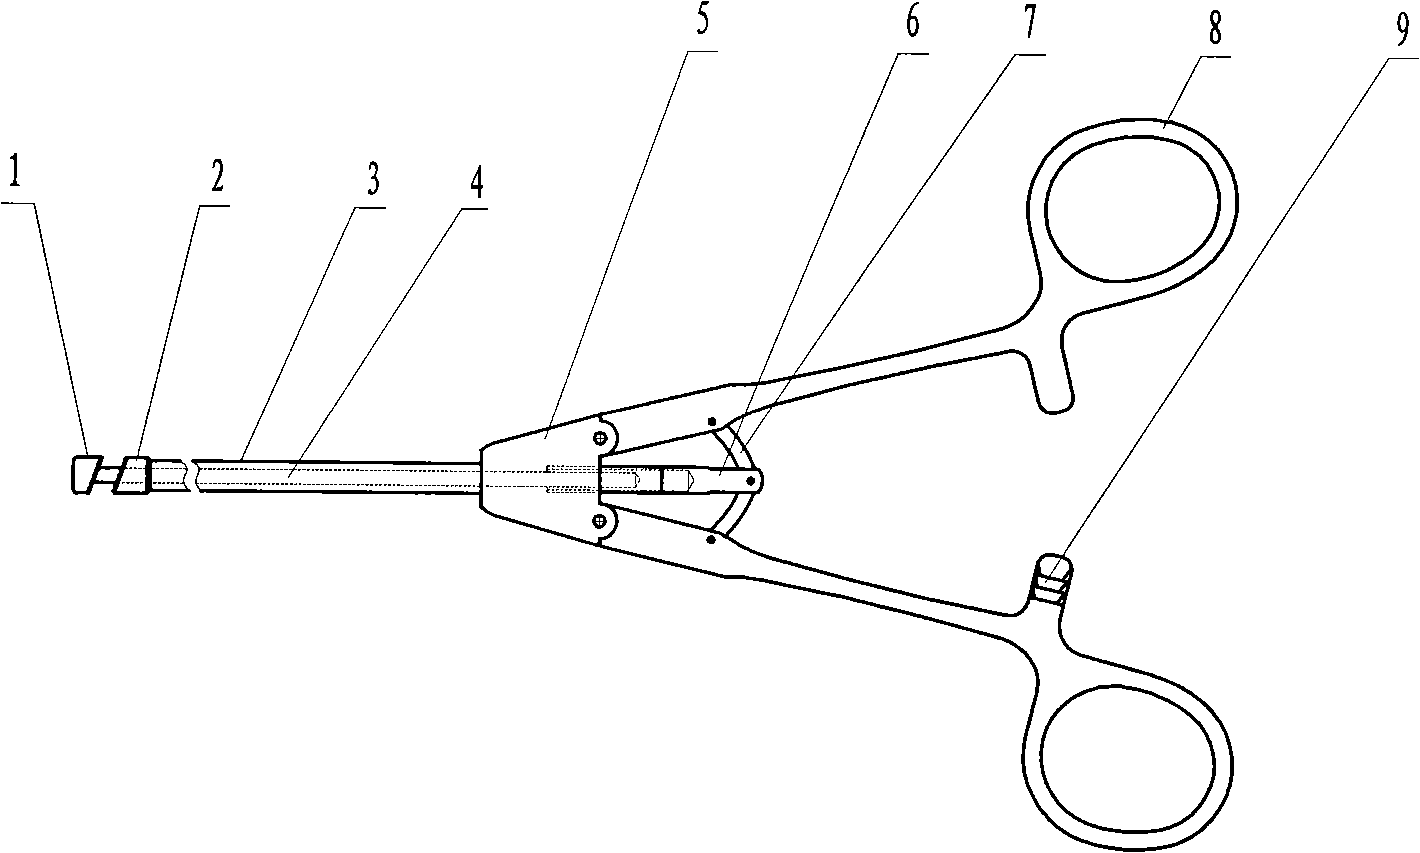 Fixed angle type needle holder